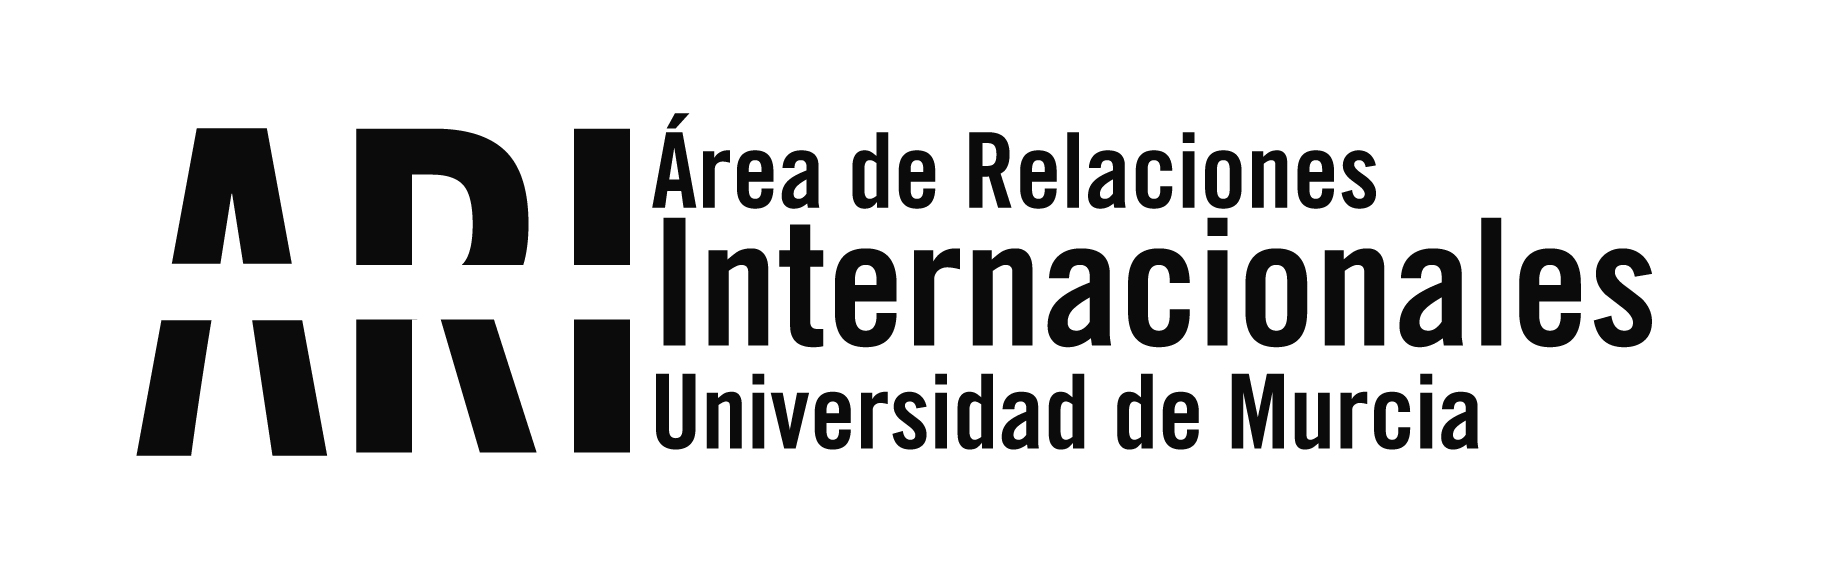 La Universidad de Murcia recibió la visita de tres instituciones chinas para desarrollar y concretar futuras colaboraciones académicas - Área de Relaciones Internacionales